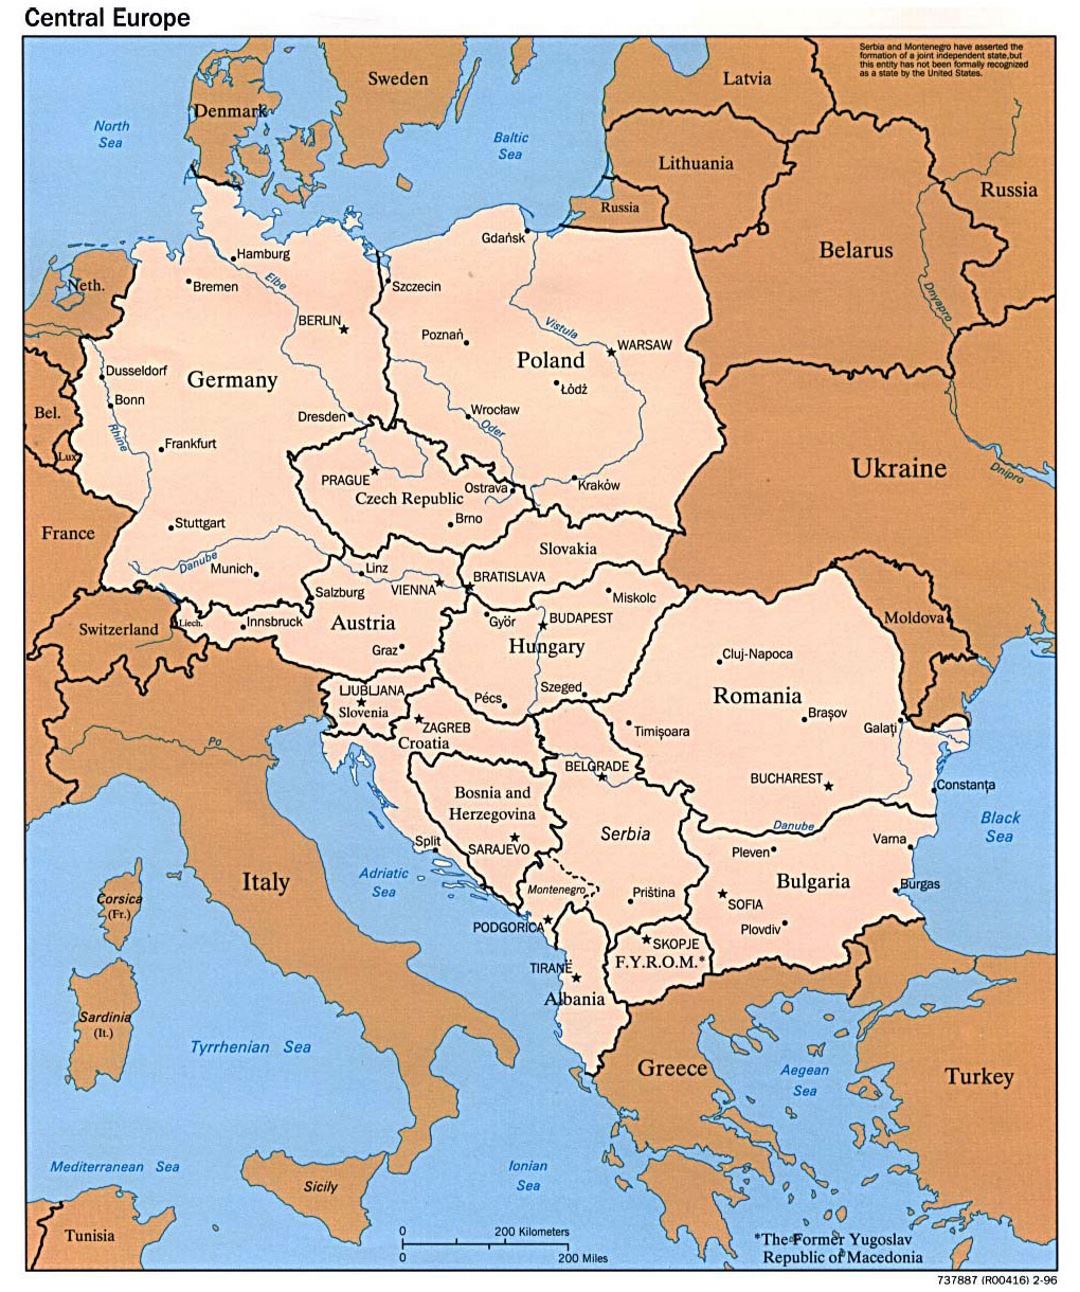 Mapa político de Europa central - 1996